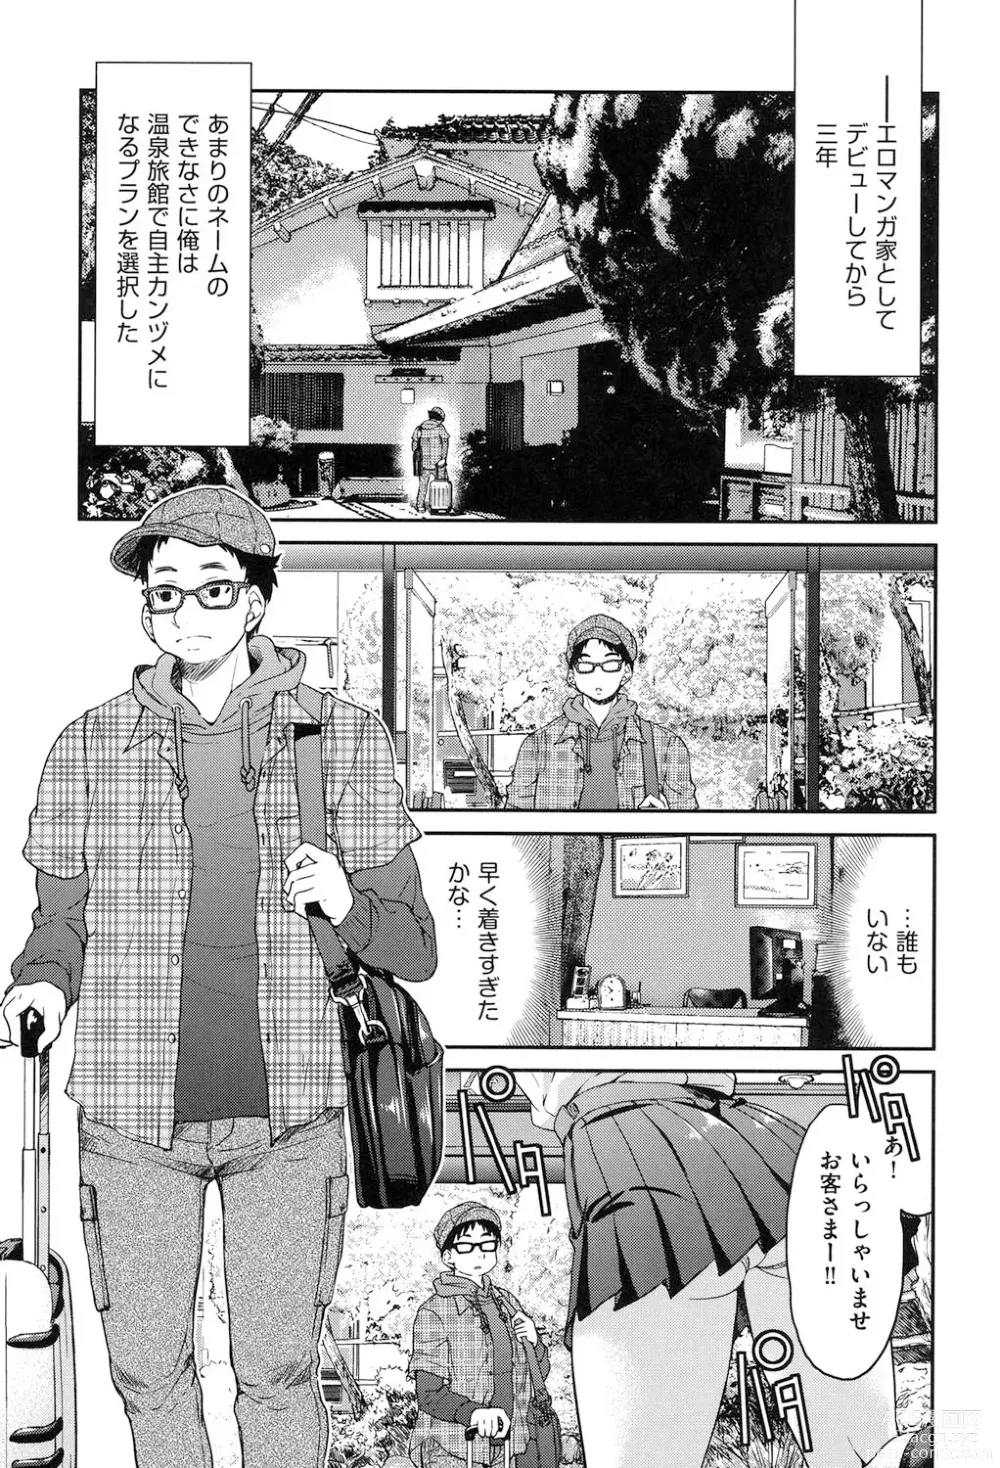 Page 8 of manga Seifuku JK